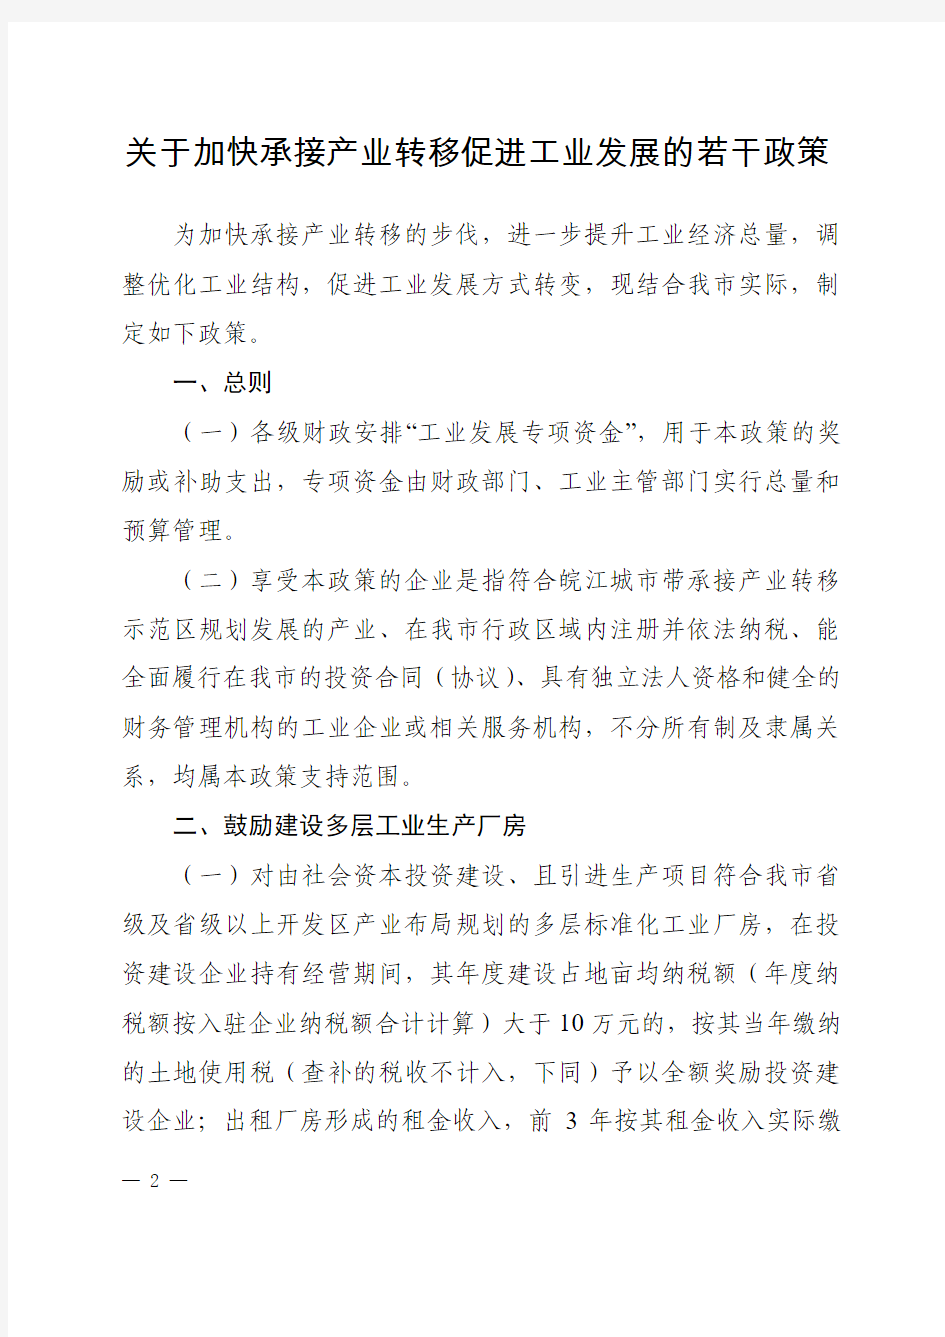 344-芜湖市人民政府文件